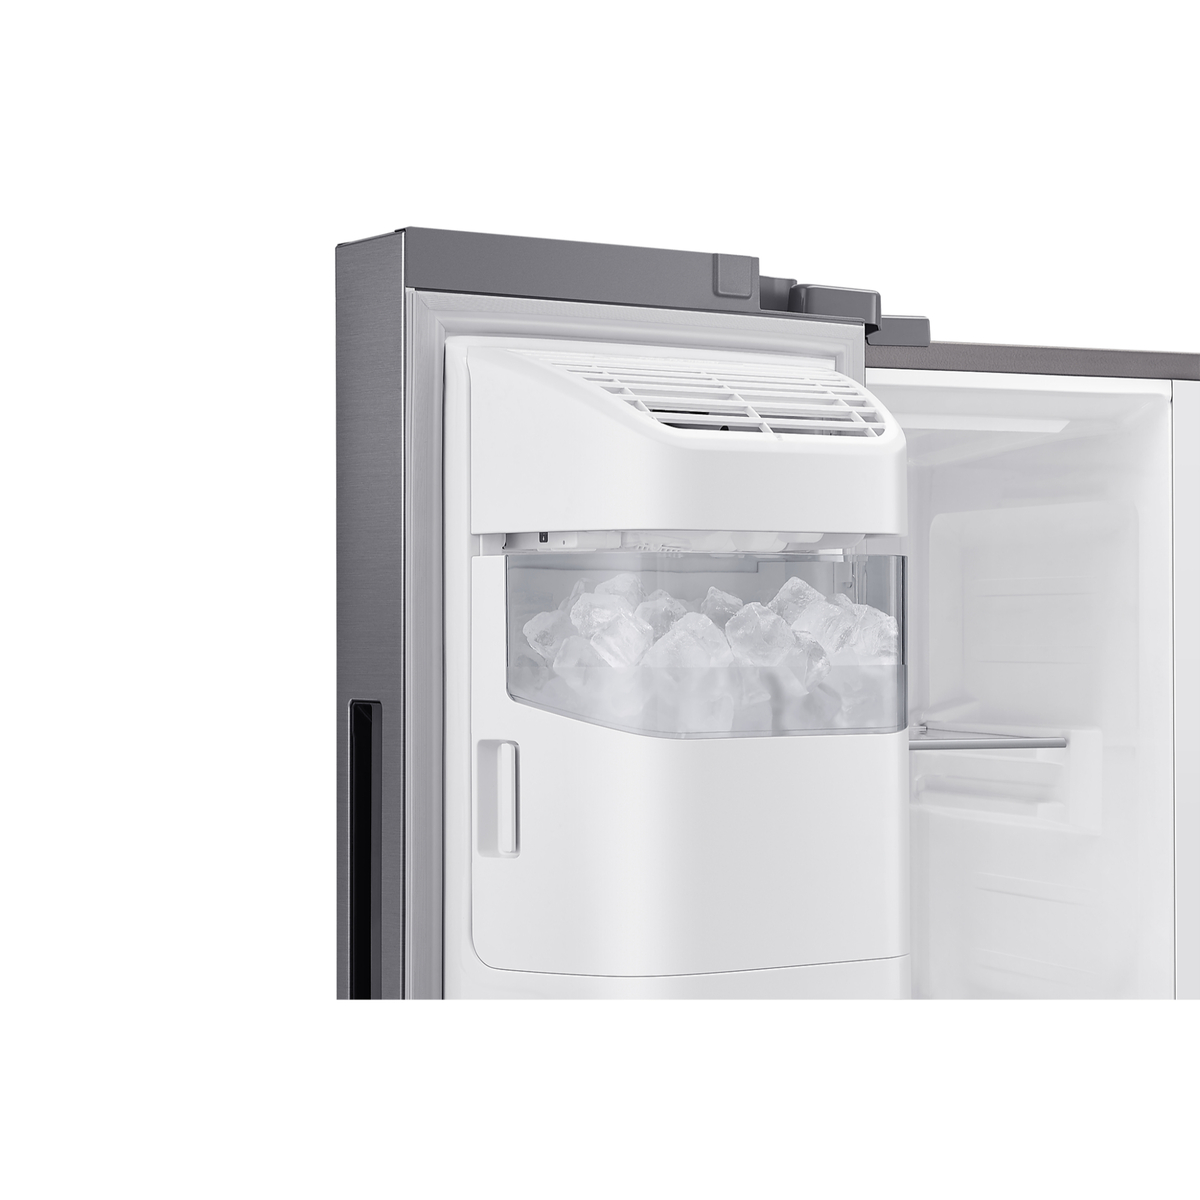 Samsung Side by Side Refrigerator, 610 L, Refined Inox, RH65DG54R3S9AE